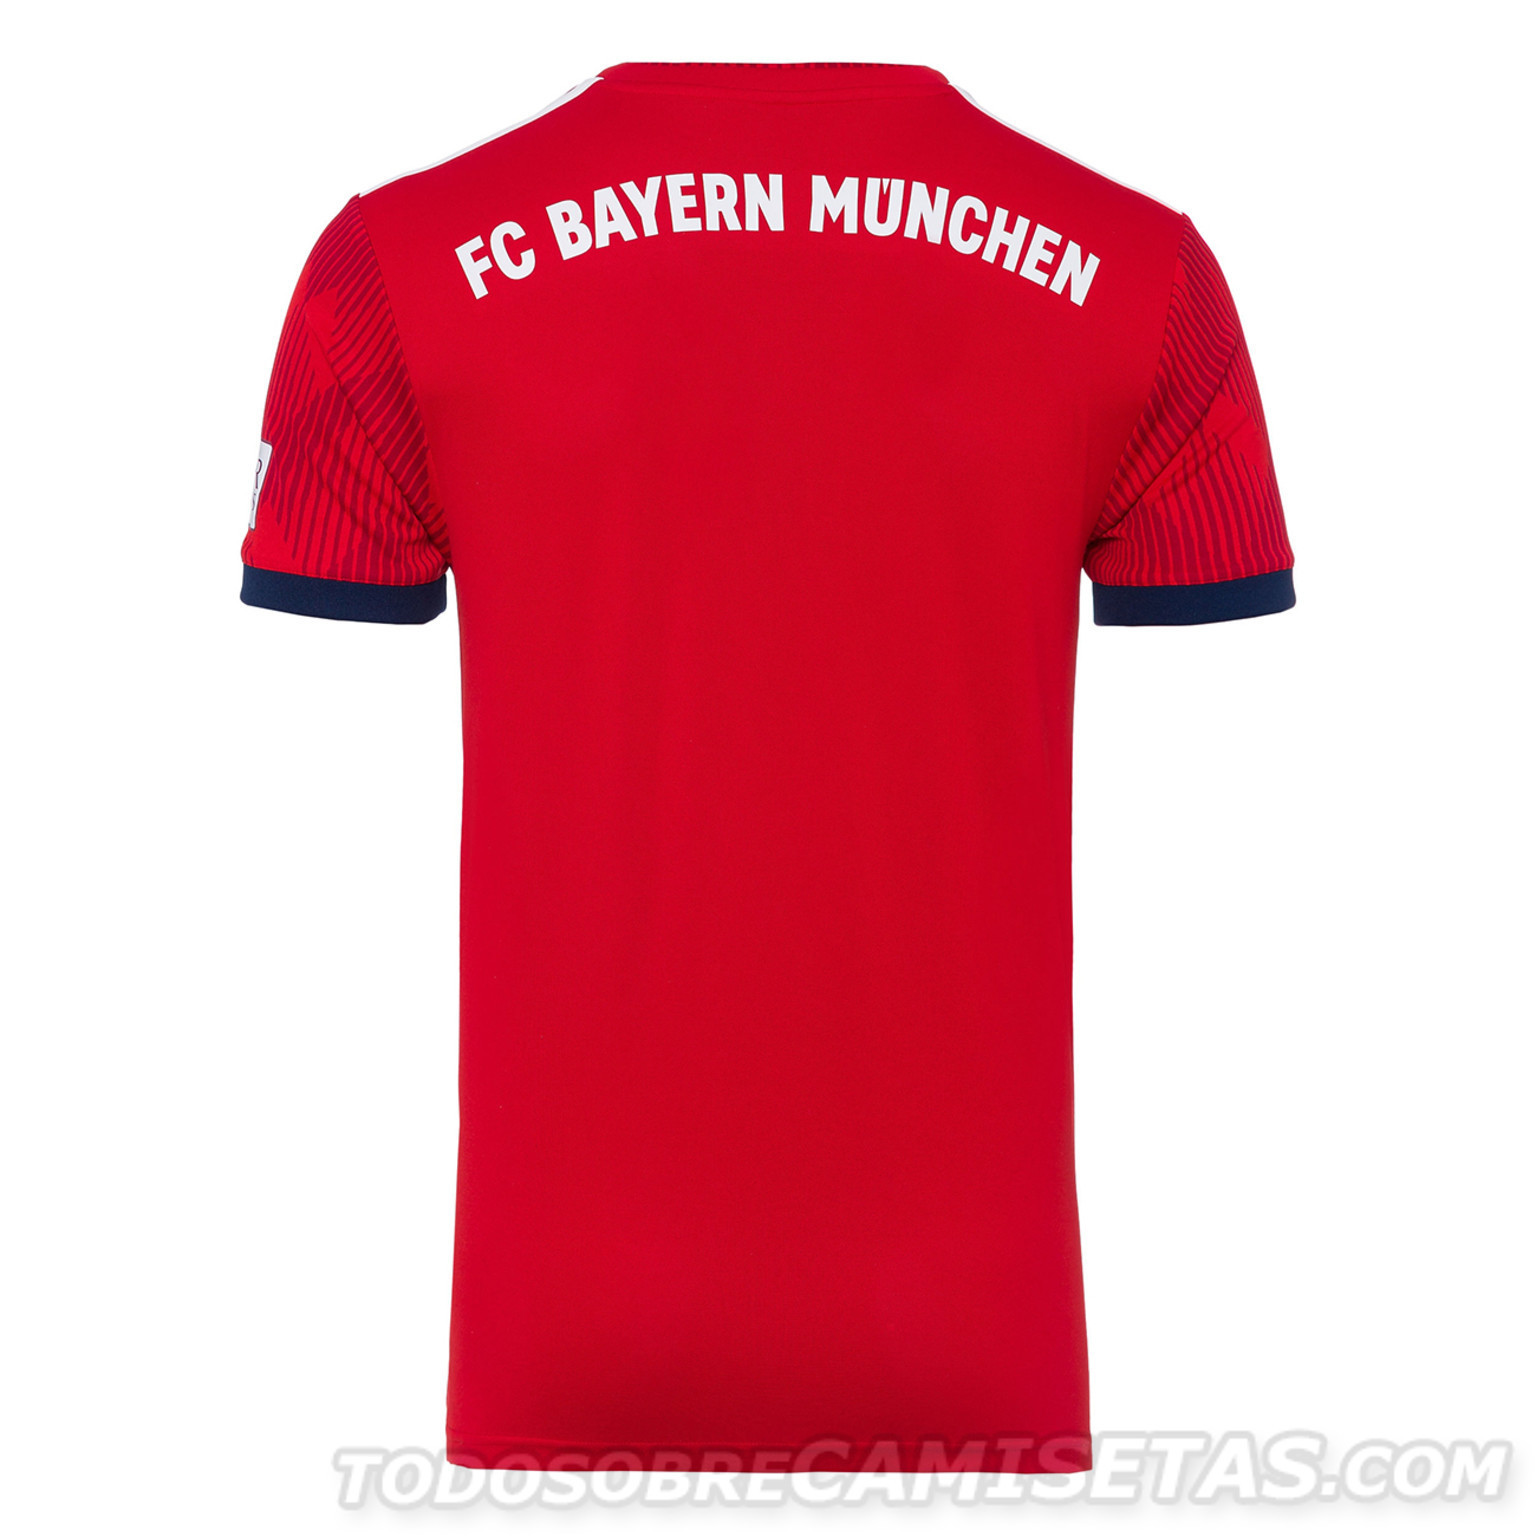 Bayern-Munich-2018-19-adidas-new-home-kit-7.jpg